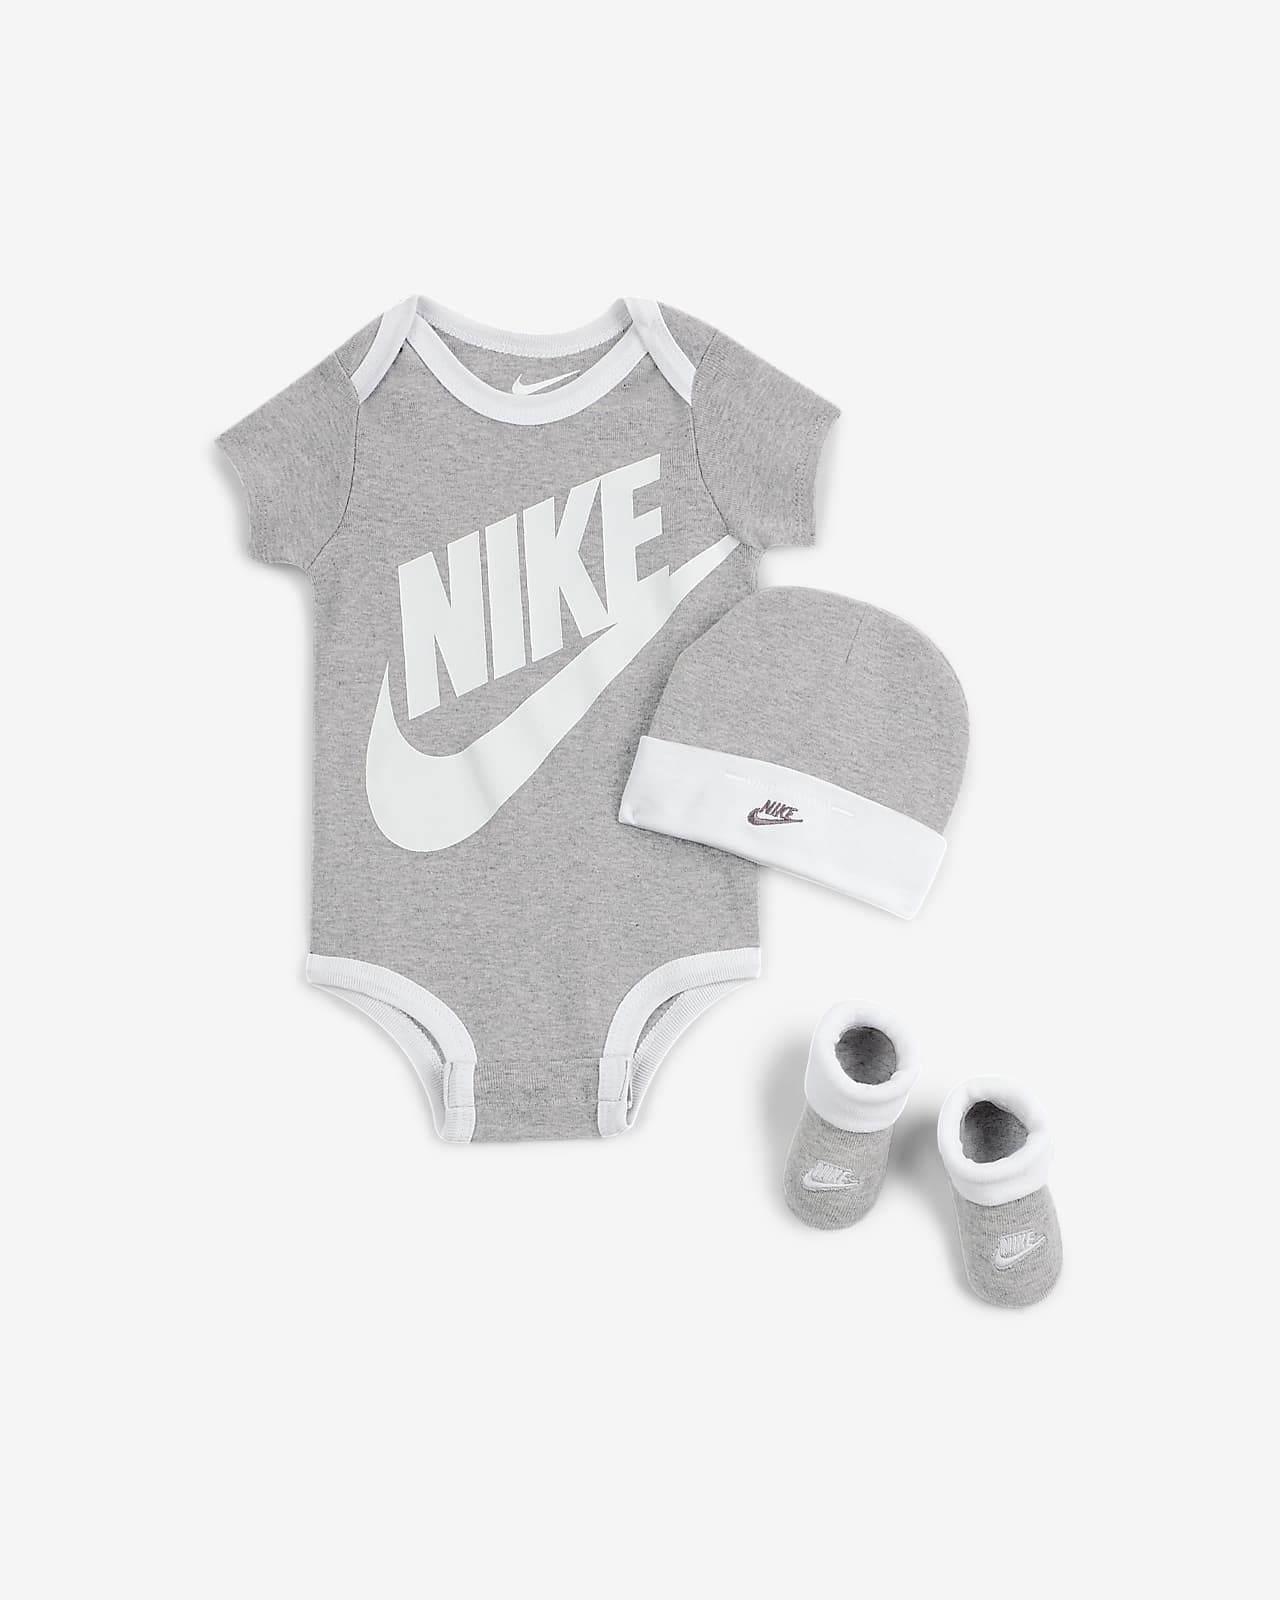 Trojdílná kojenecká souprava Nike (0–6 měsíců)